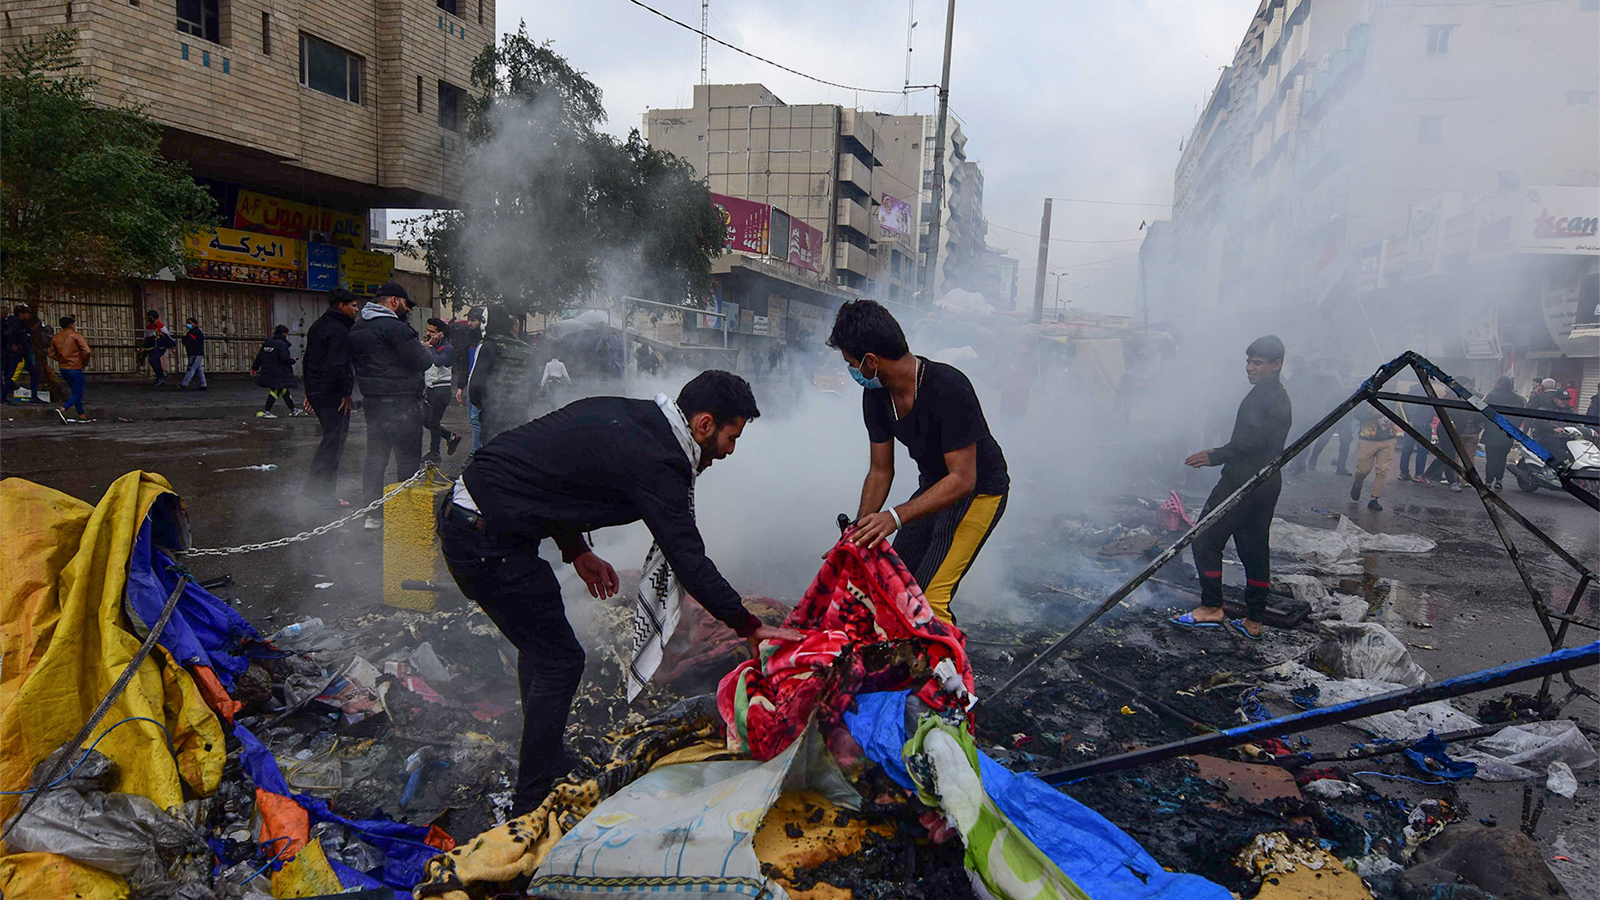 حرق خيم وأمتعة وانتشار للغاز المدمع بعد محاولة قوات الأمن اقتحام ساحة التحرير (الأوروبية)